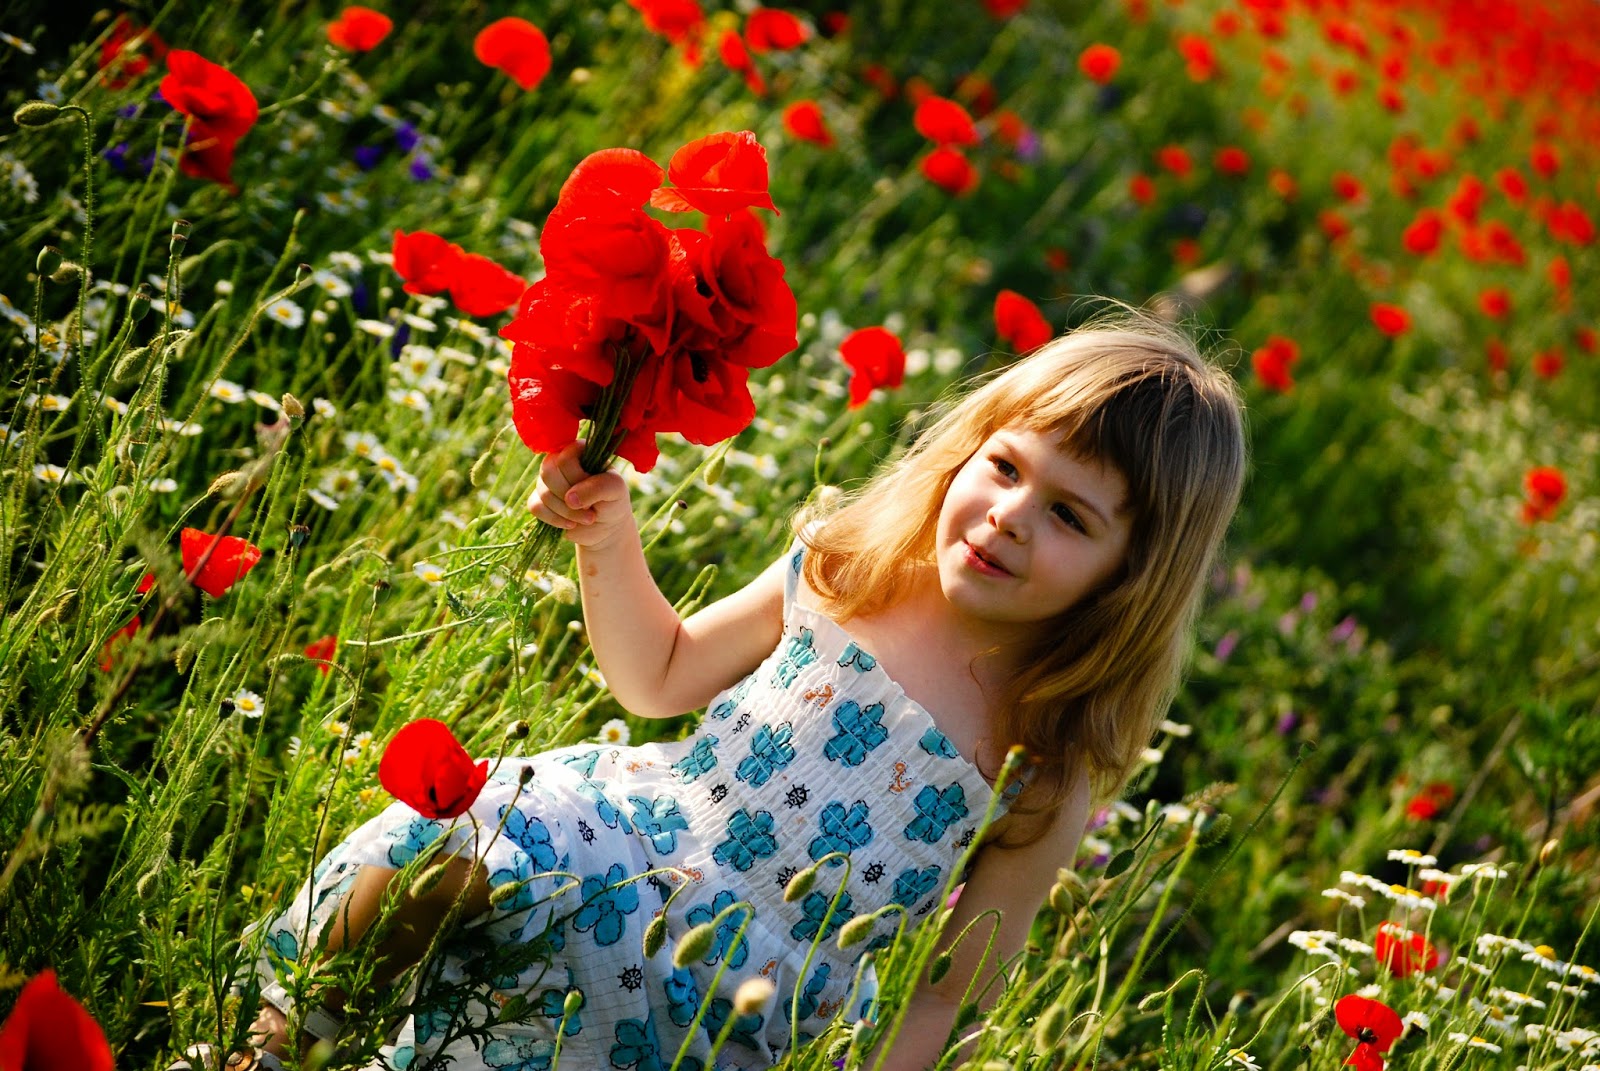 Gratis gambar anak perempuan cantik dengan bunga warna merah